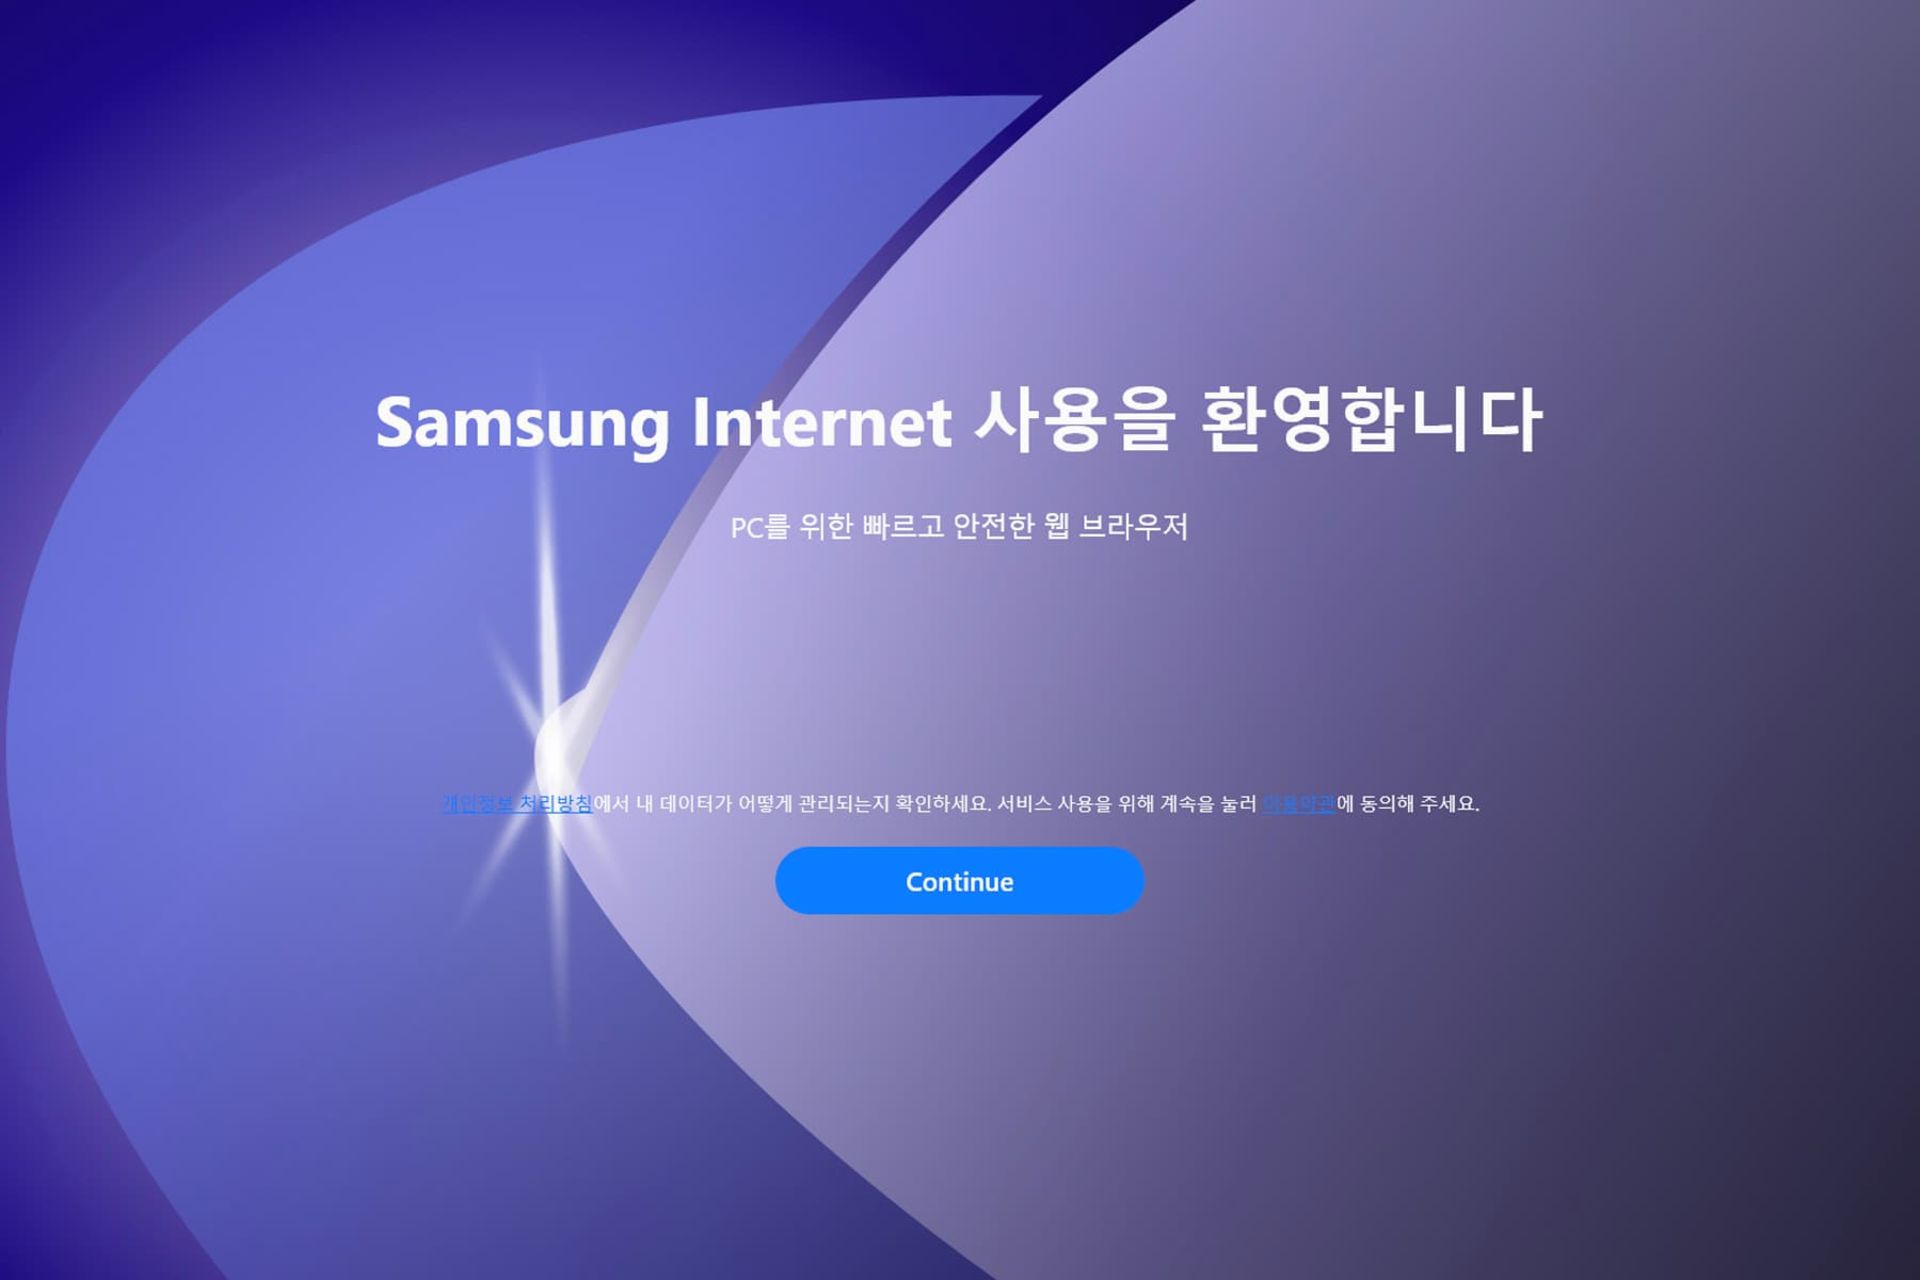 مرورگر سامسونگ اینترنت / Samsung Internet دسکتاپ صفحه اصلی